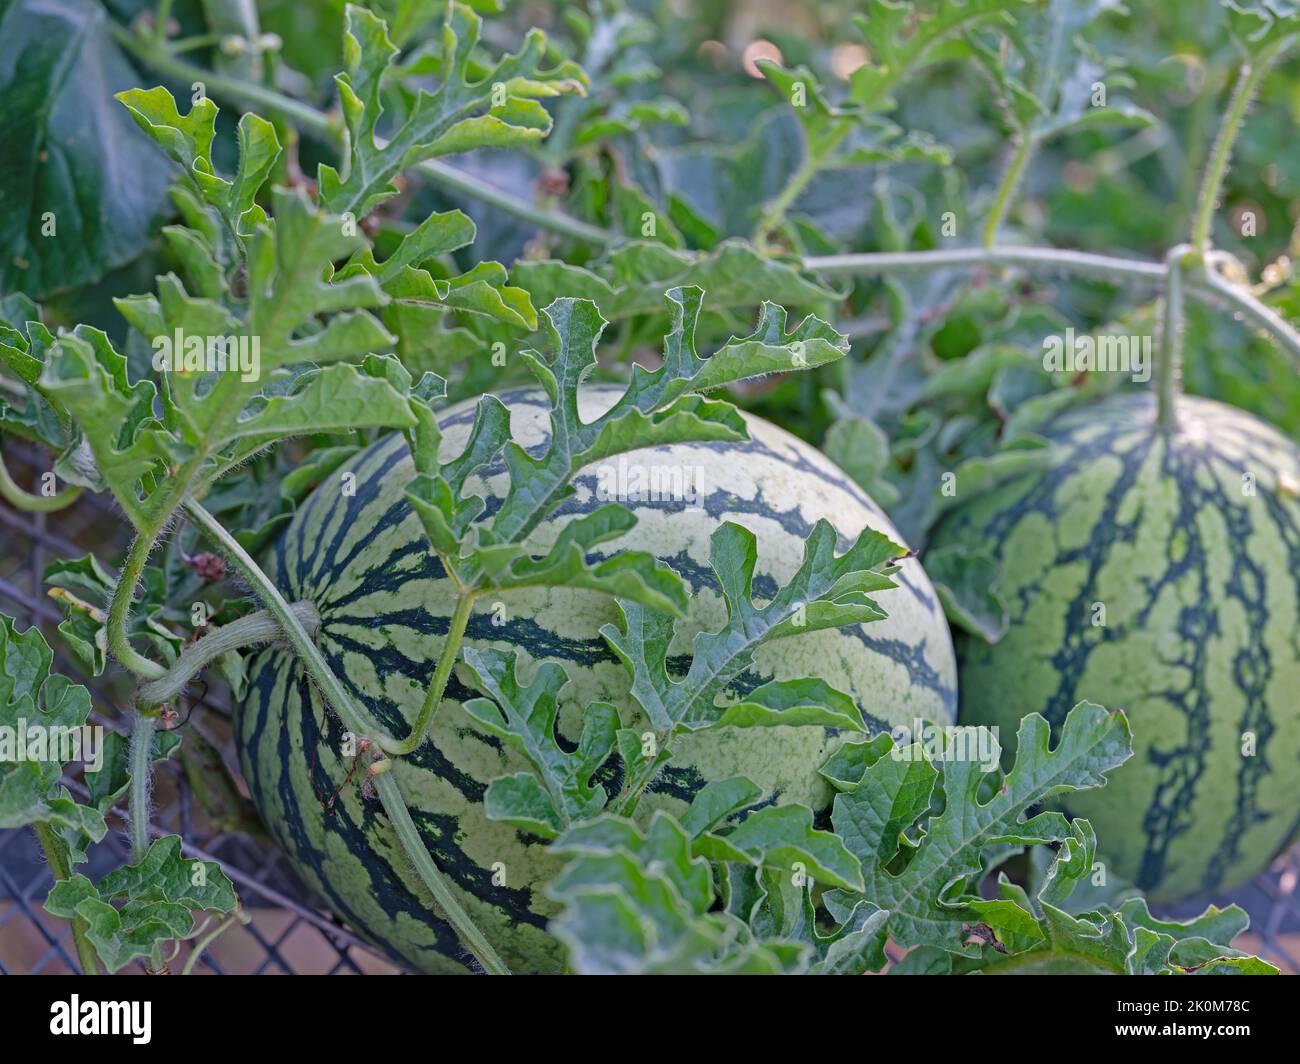 Watermelon, Citrullus lanatus, on a trellis in a garden Stock Photo